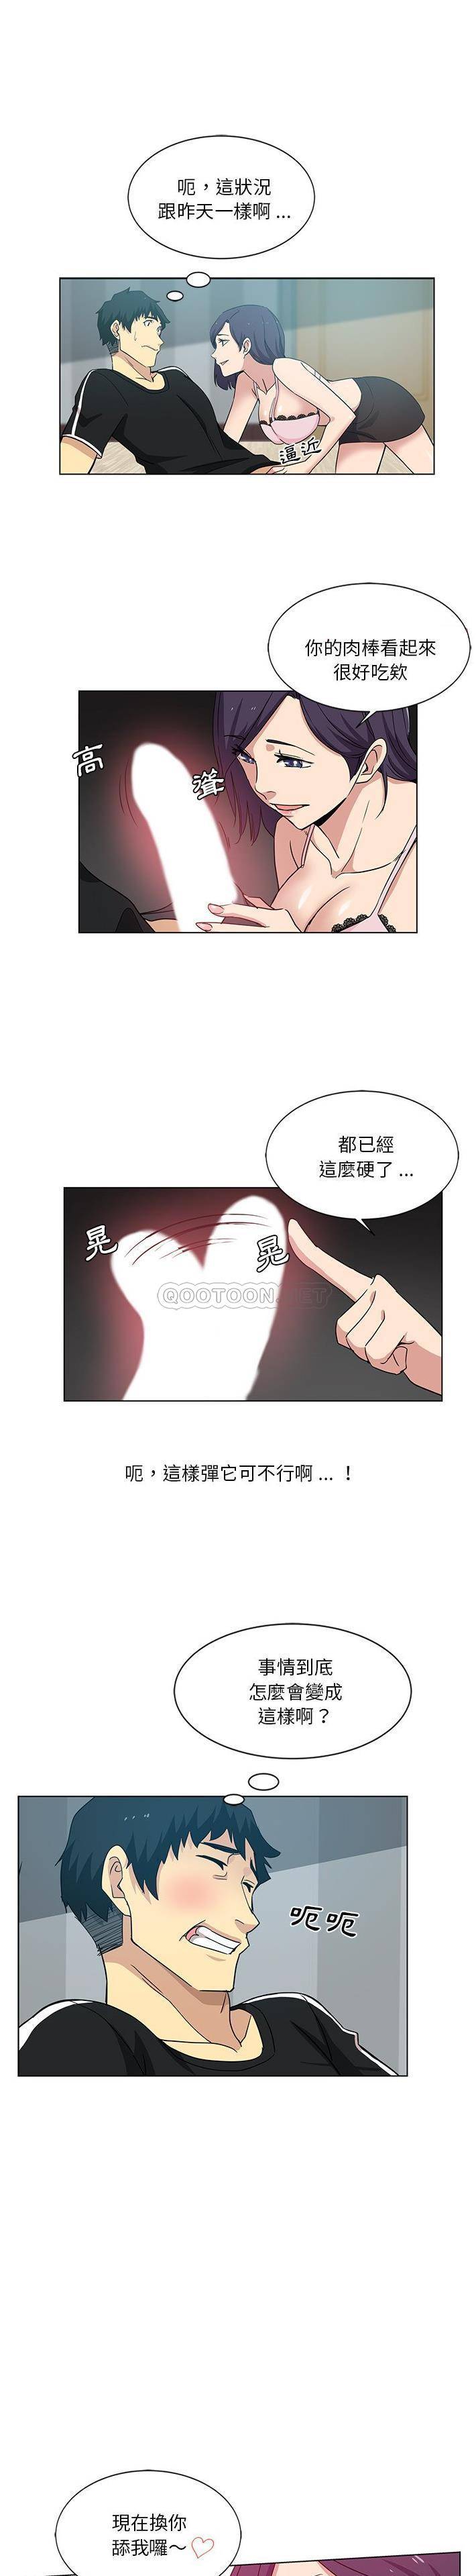 韩国污漫画 危險純友誼 第3话 1